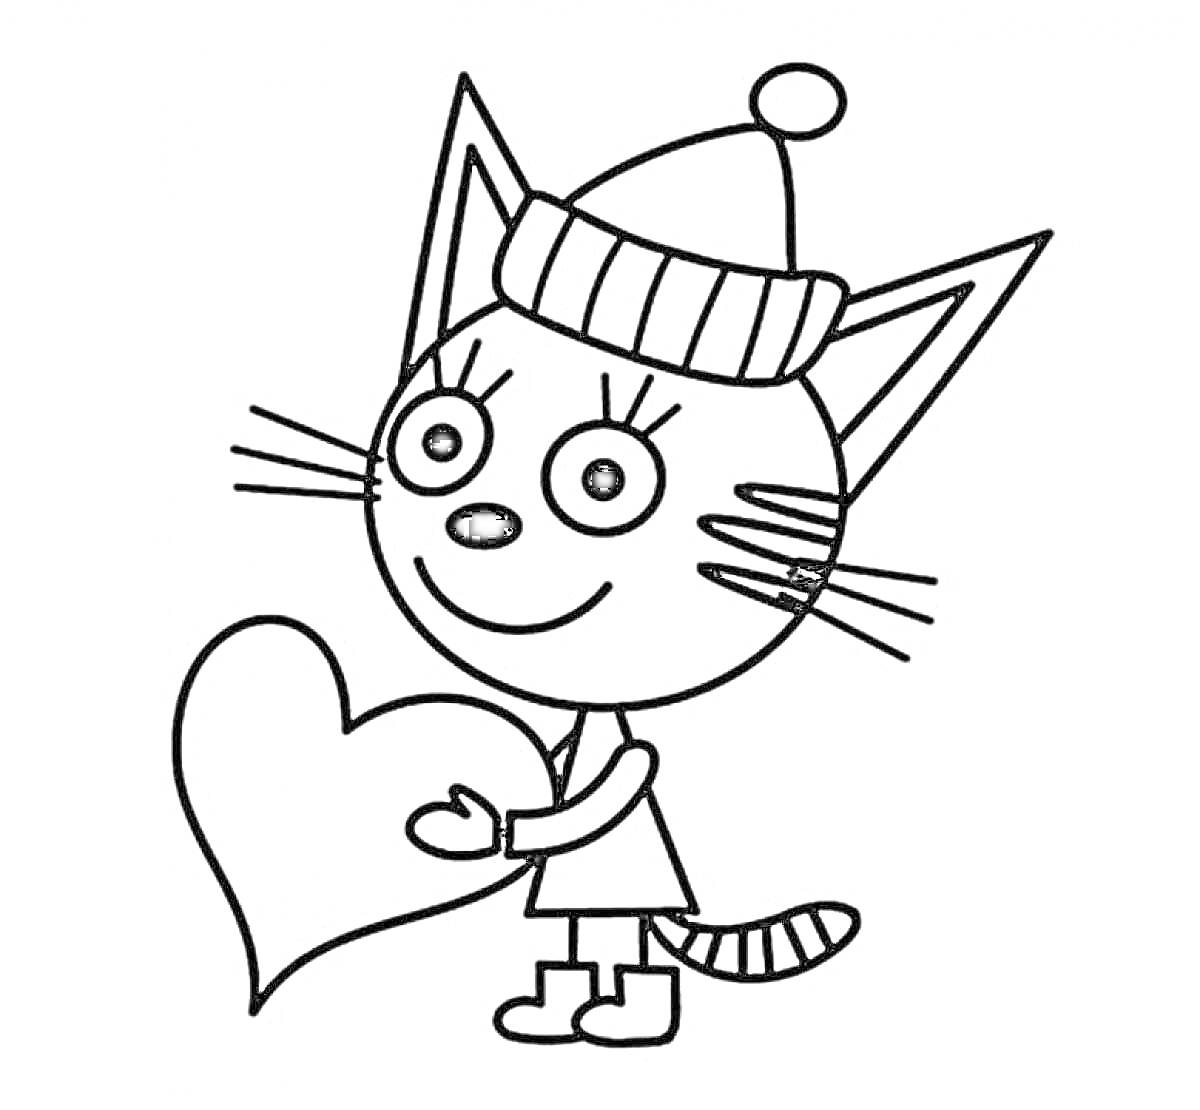 Кошка в шапке с помпоном, держащая сердце